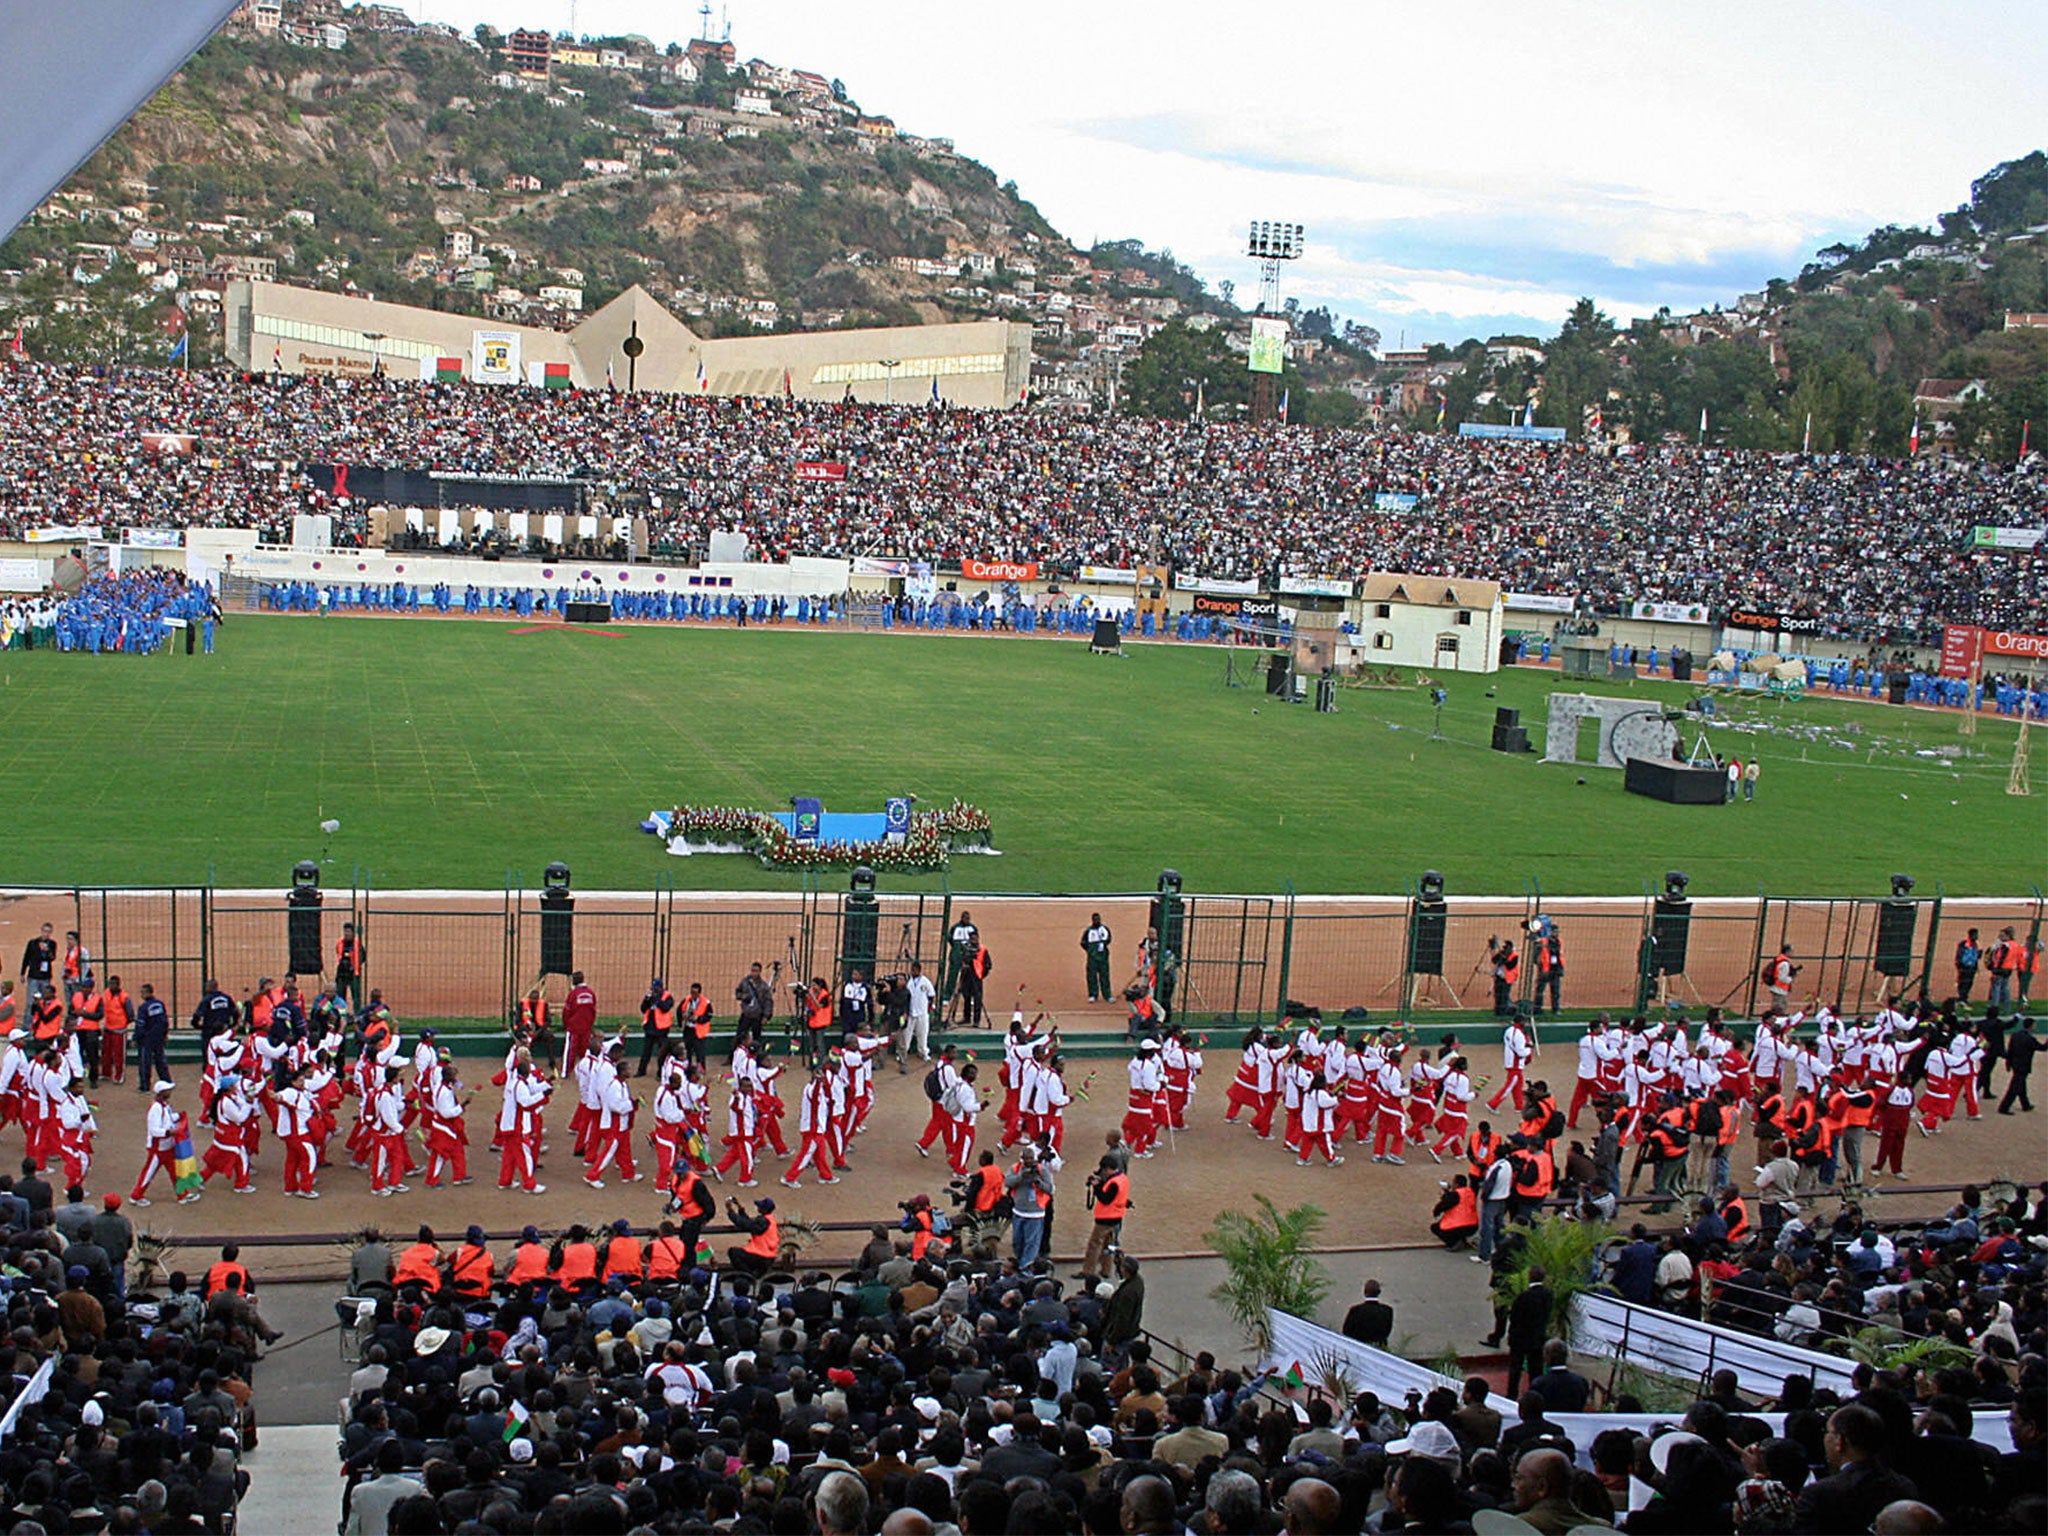 Madagascar's Mahamasina Municipal Stadium holds around 22,000 people